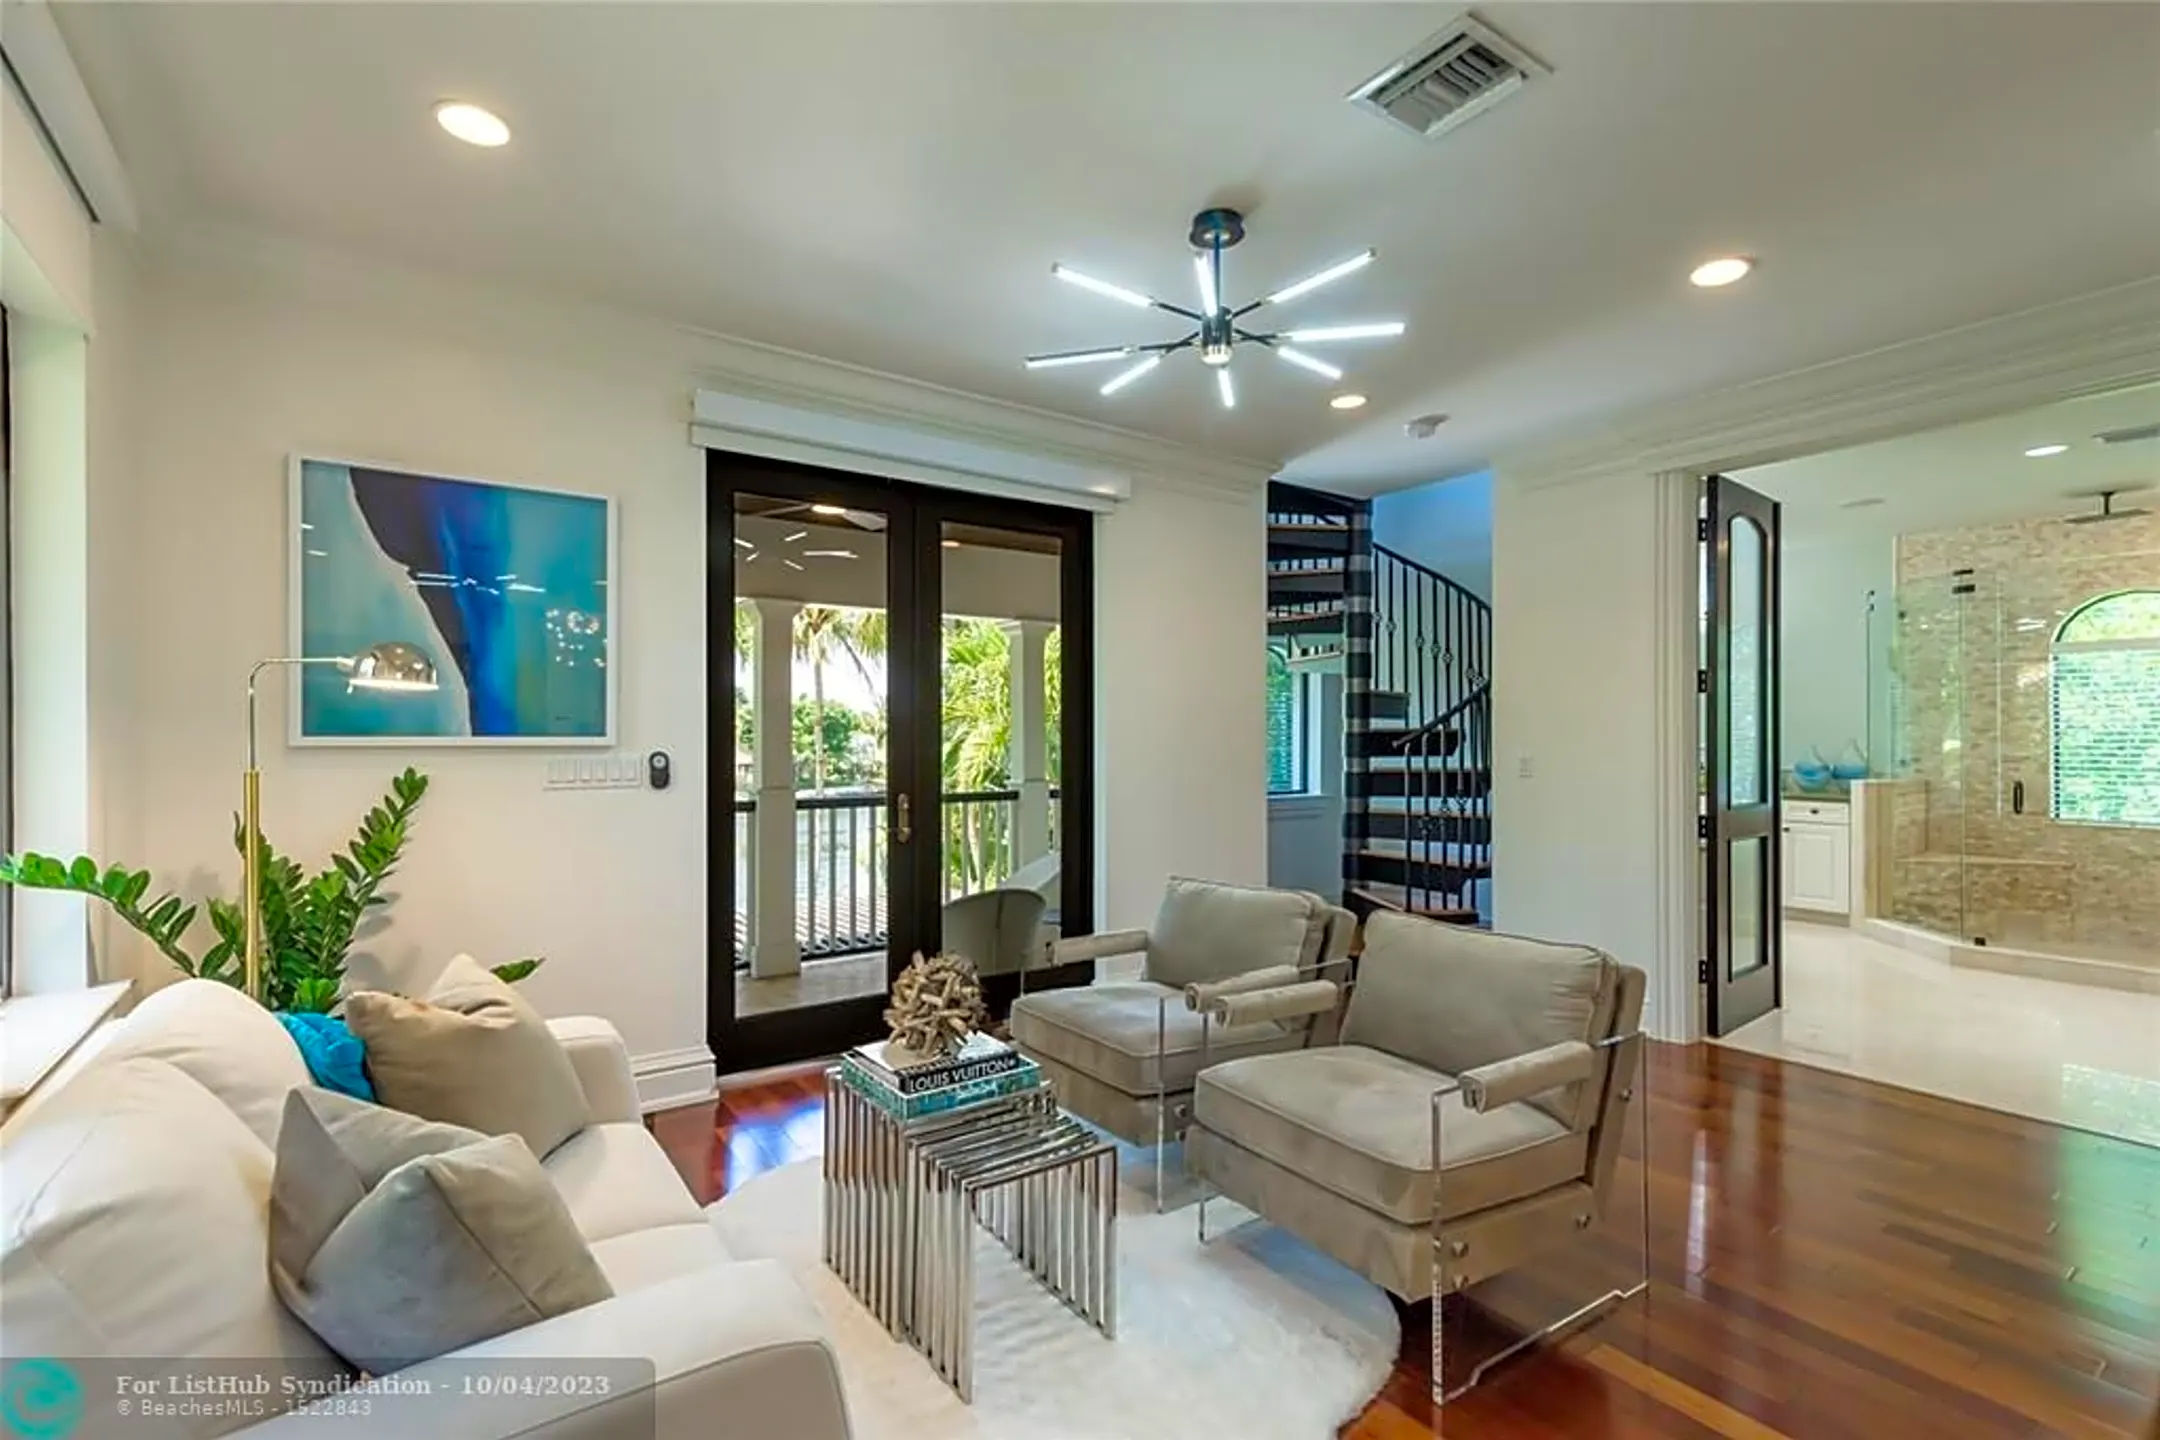 Living Room - 2415 Middle River Dr - Fort Lauderdale, FL